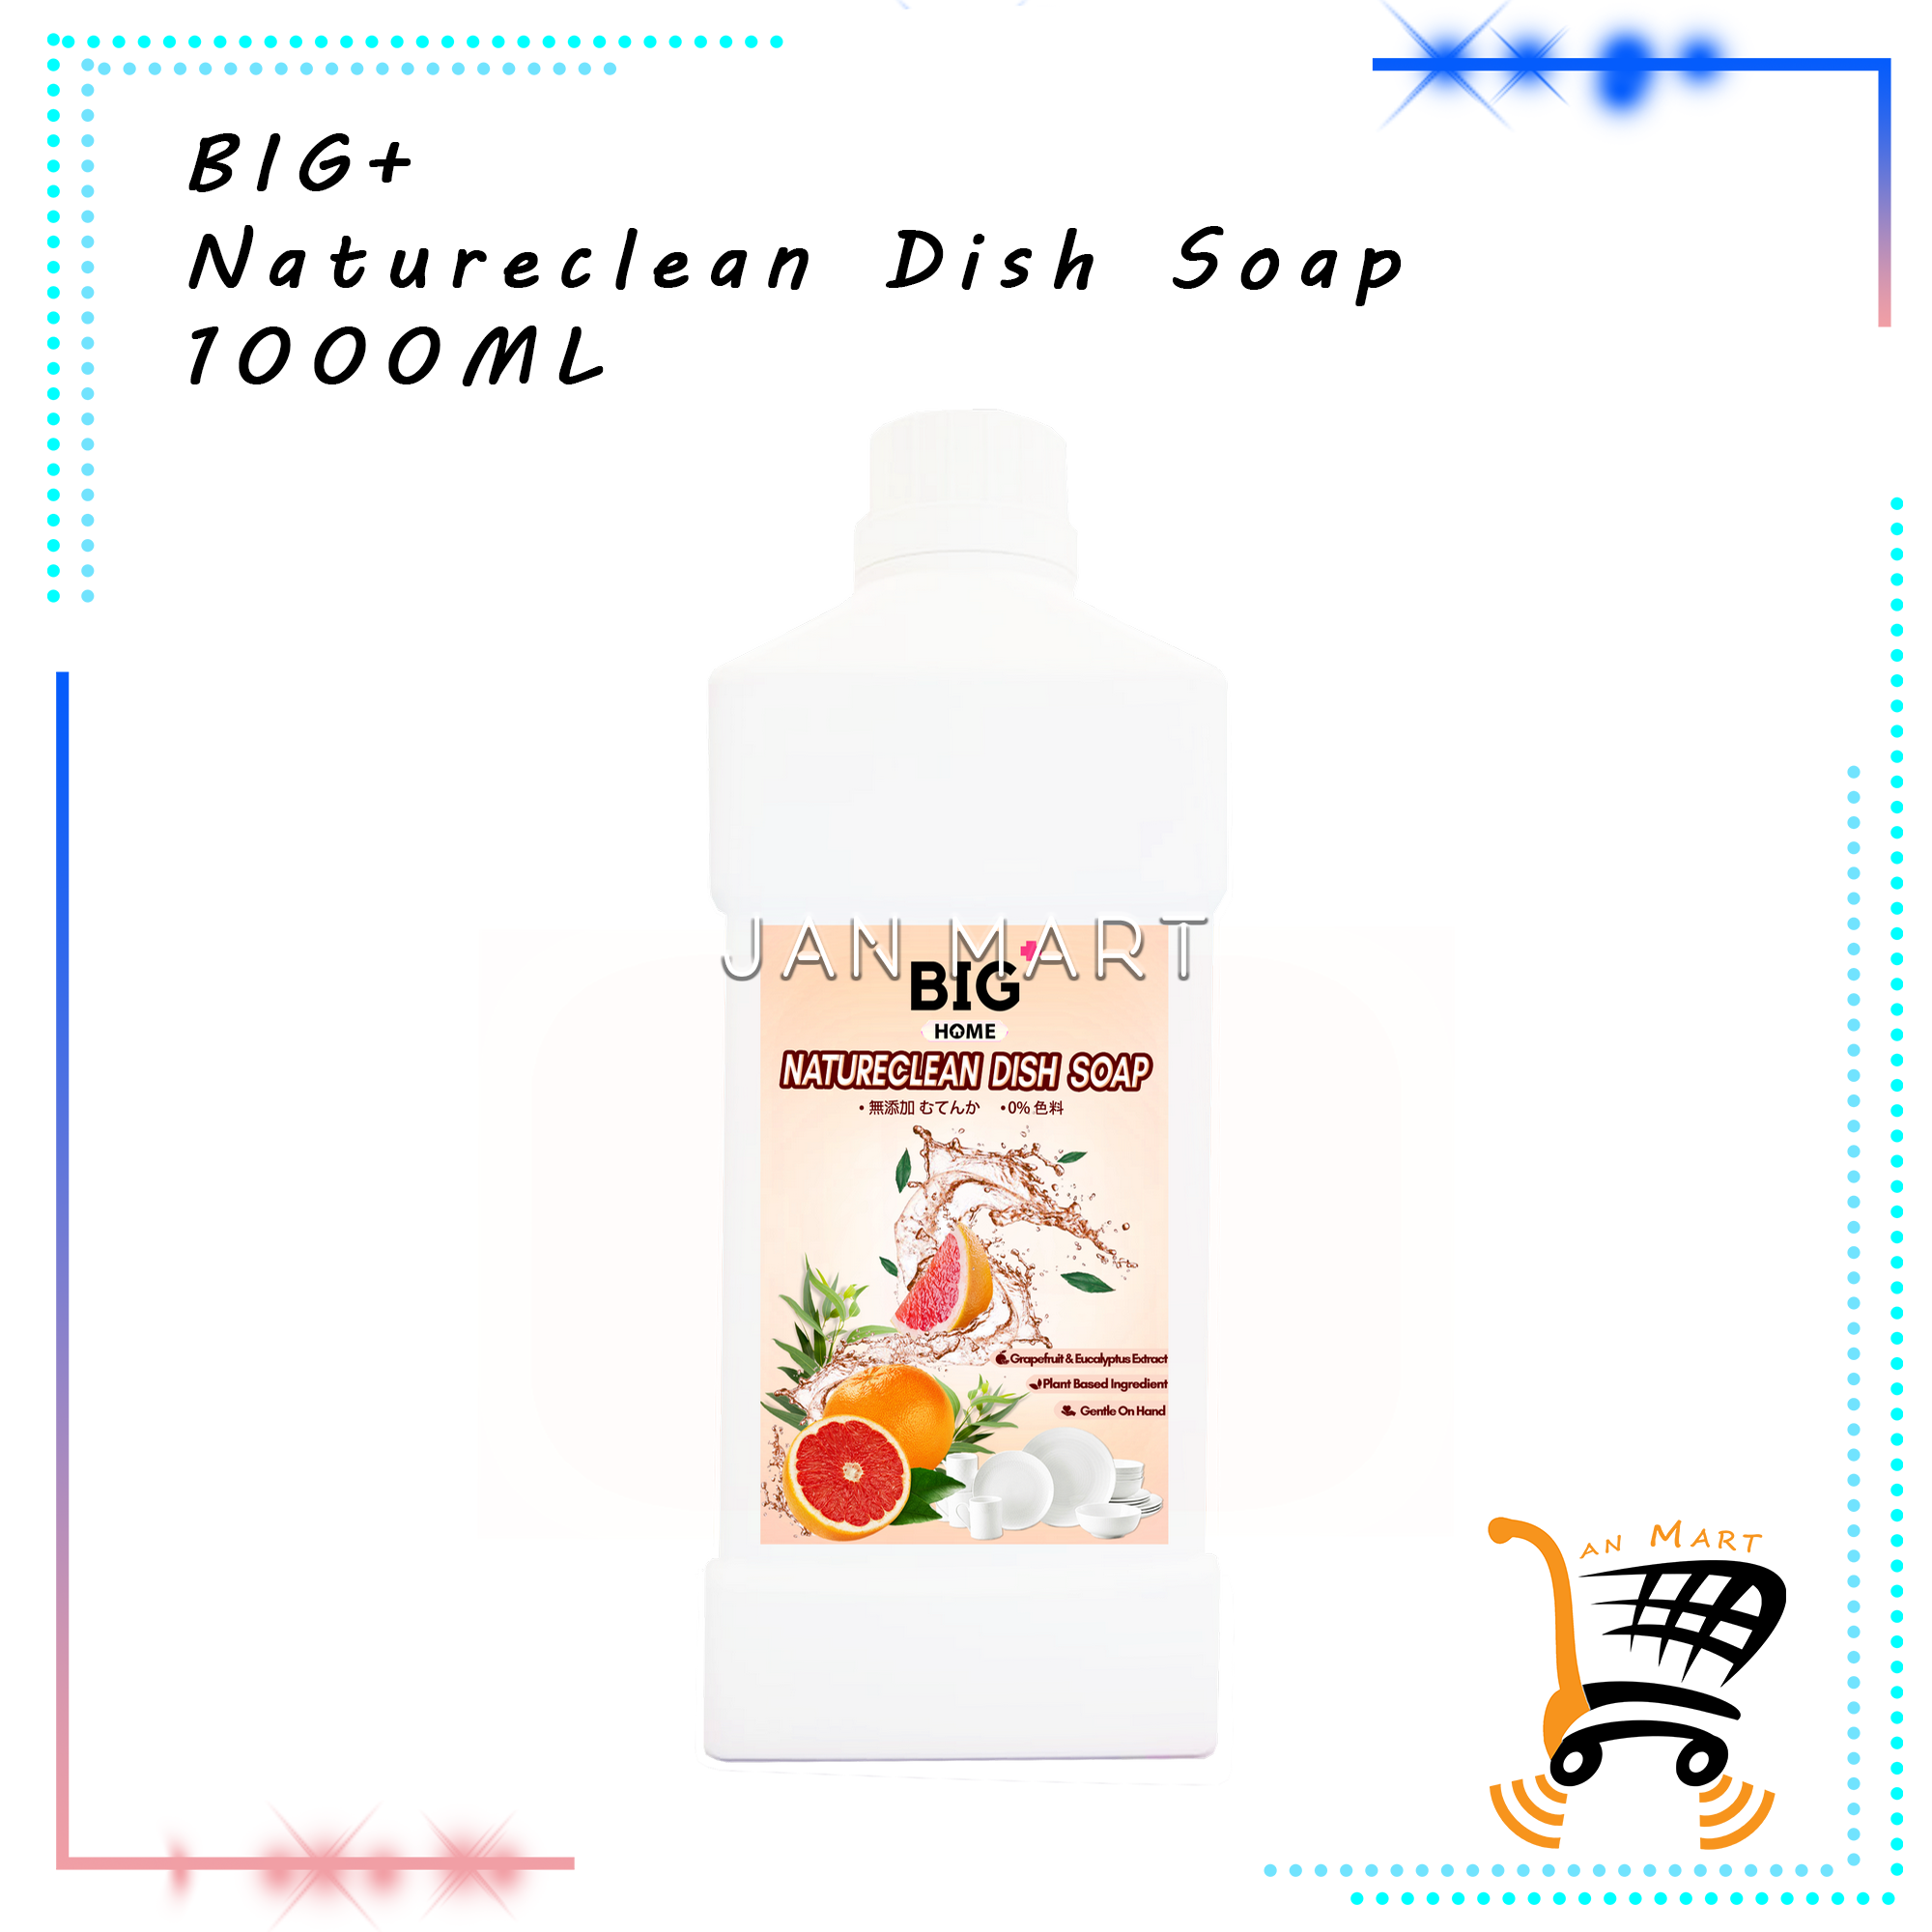 BIG+ Natureclean Dish Soap 1000ML